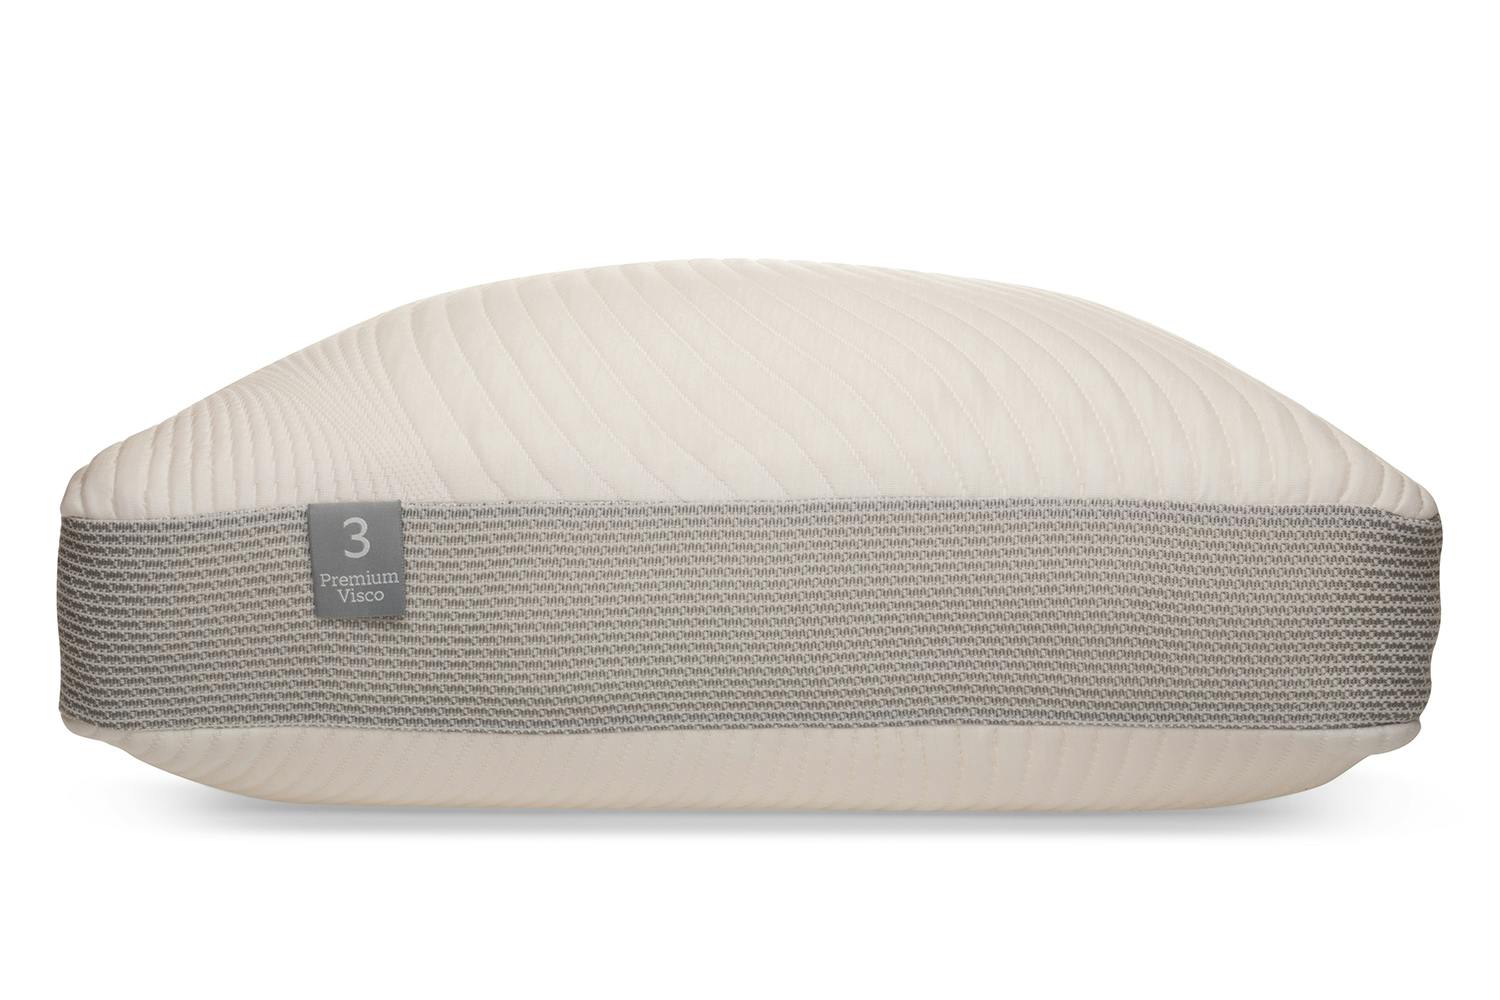 Sleep Studio Pillow | Premium Visco | Size 3